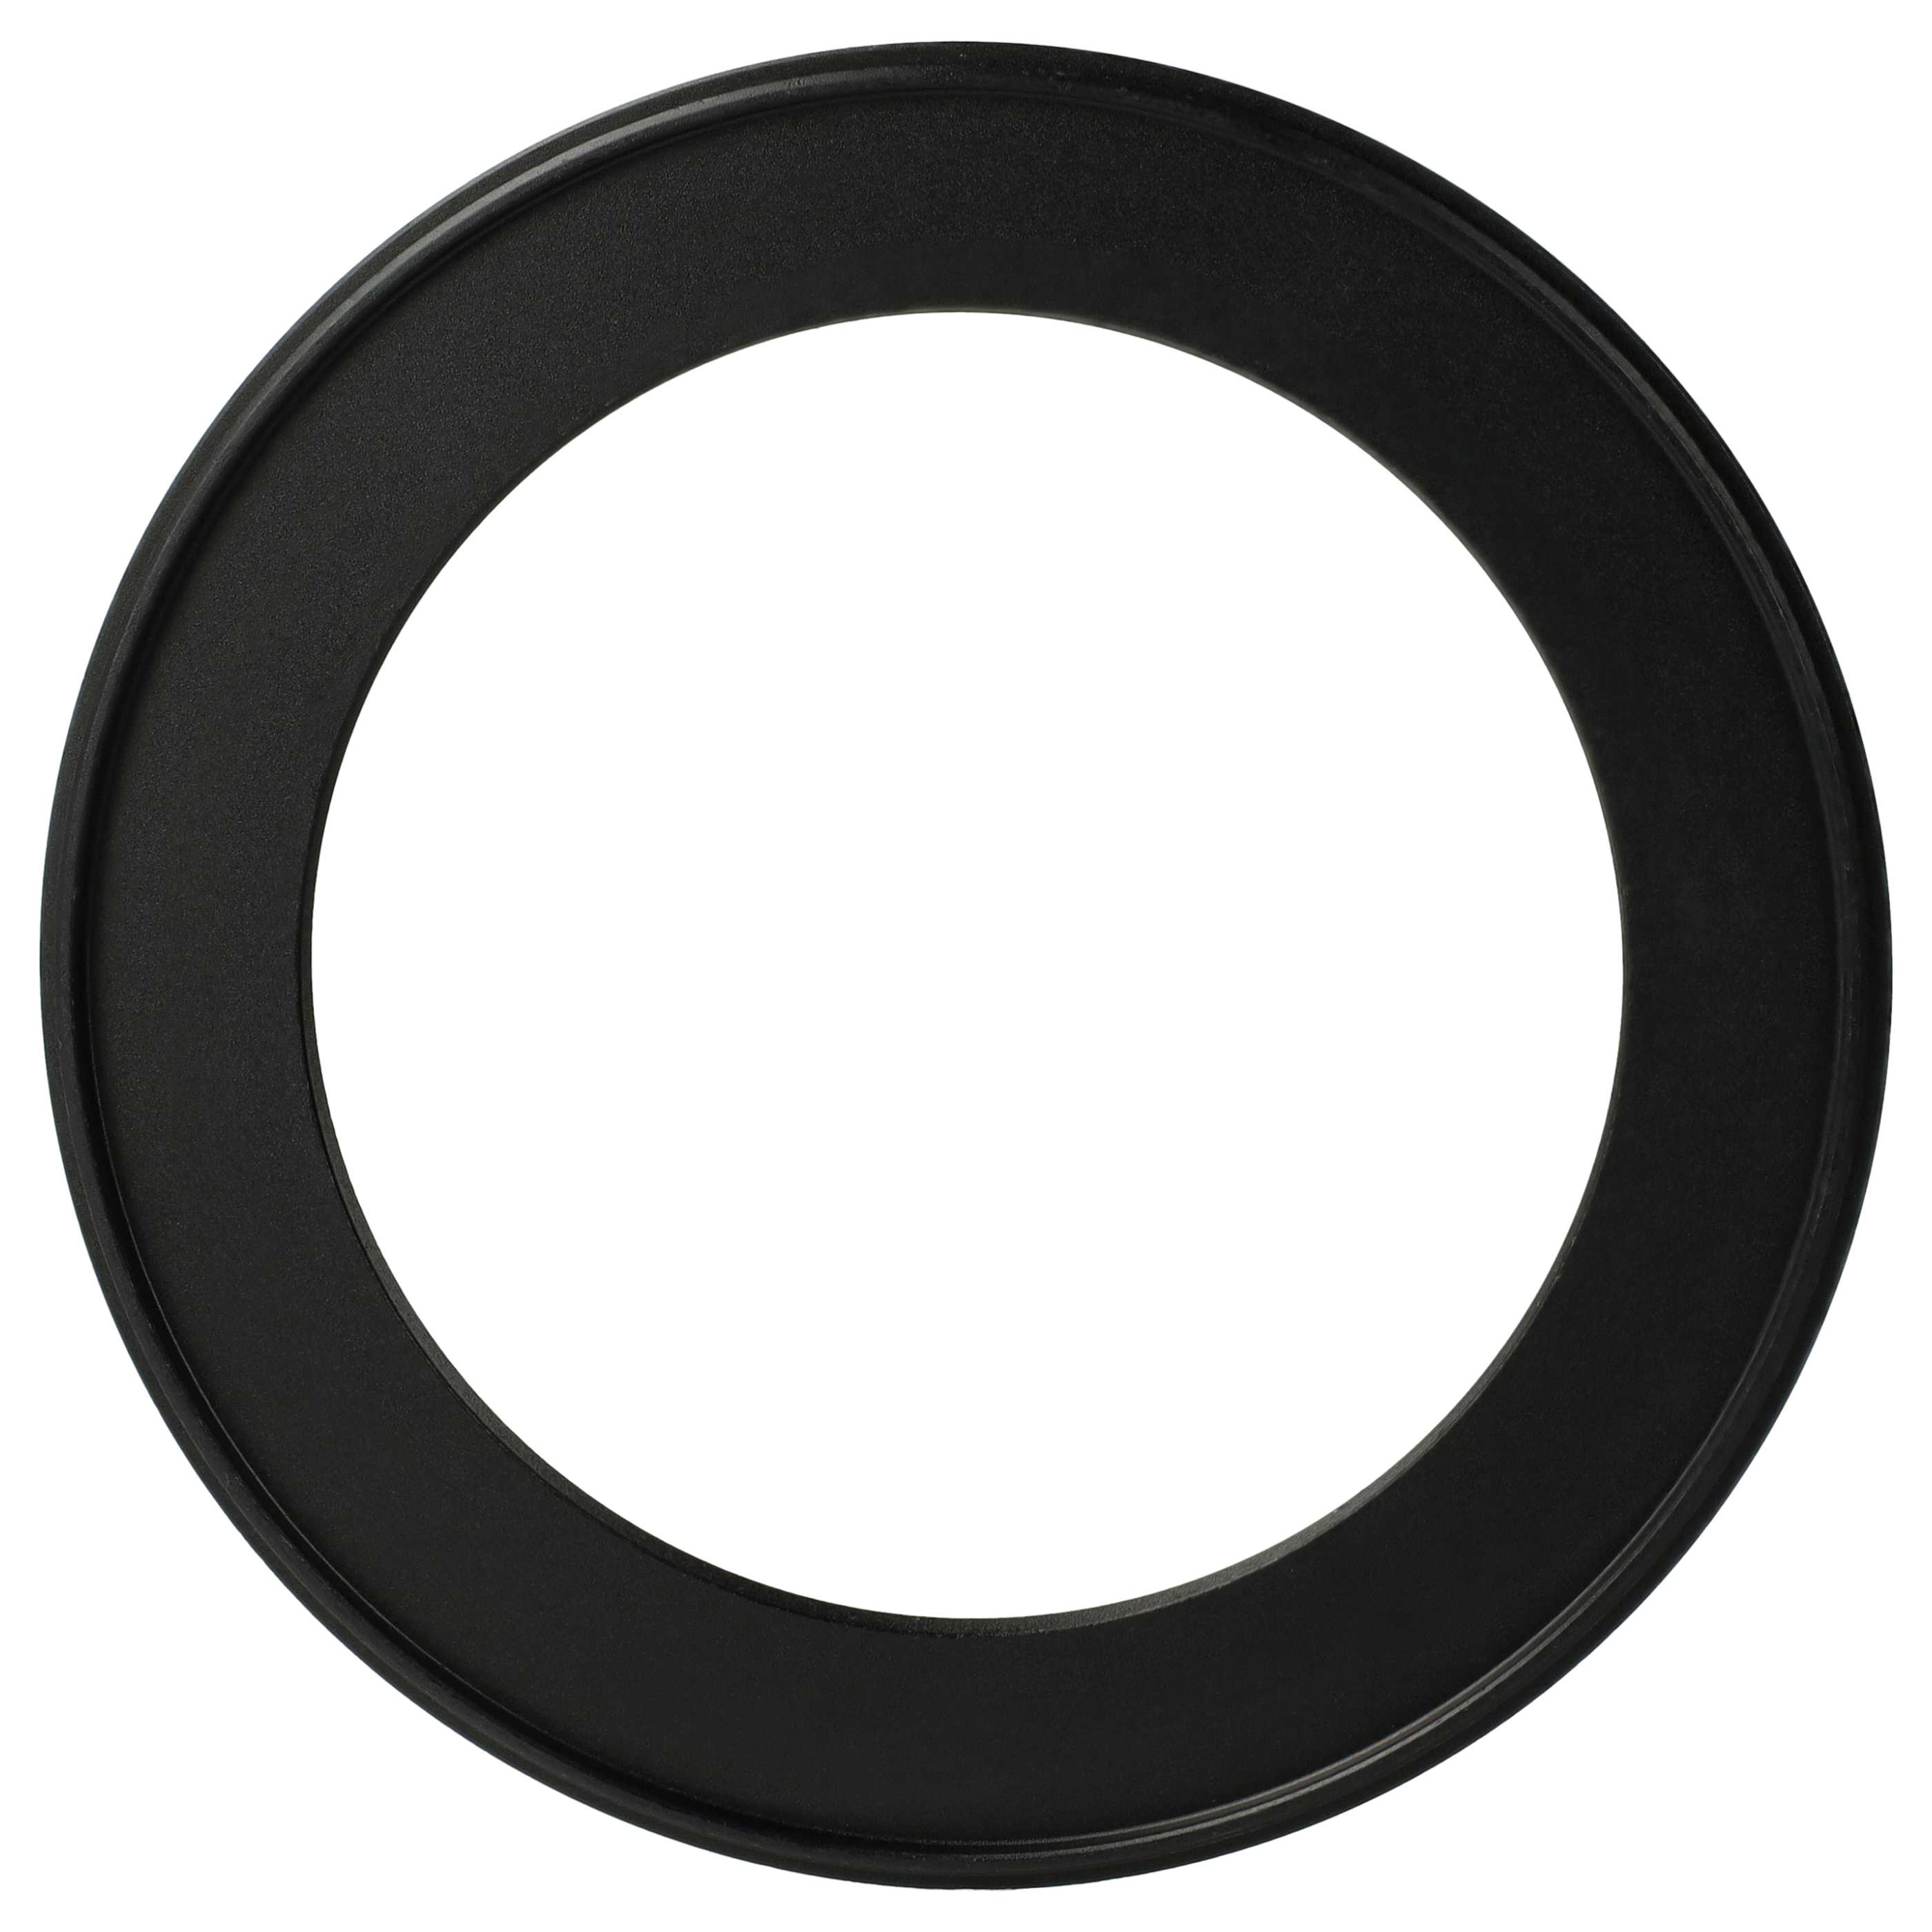 Redukcja filtrowa adapter Step-Down 105 mm - 77 mm pasująca do obiektywu - metal, czarny